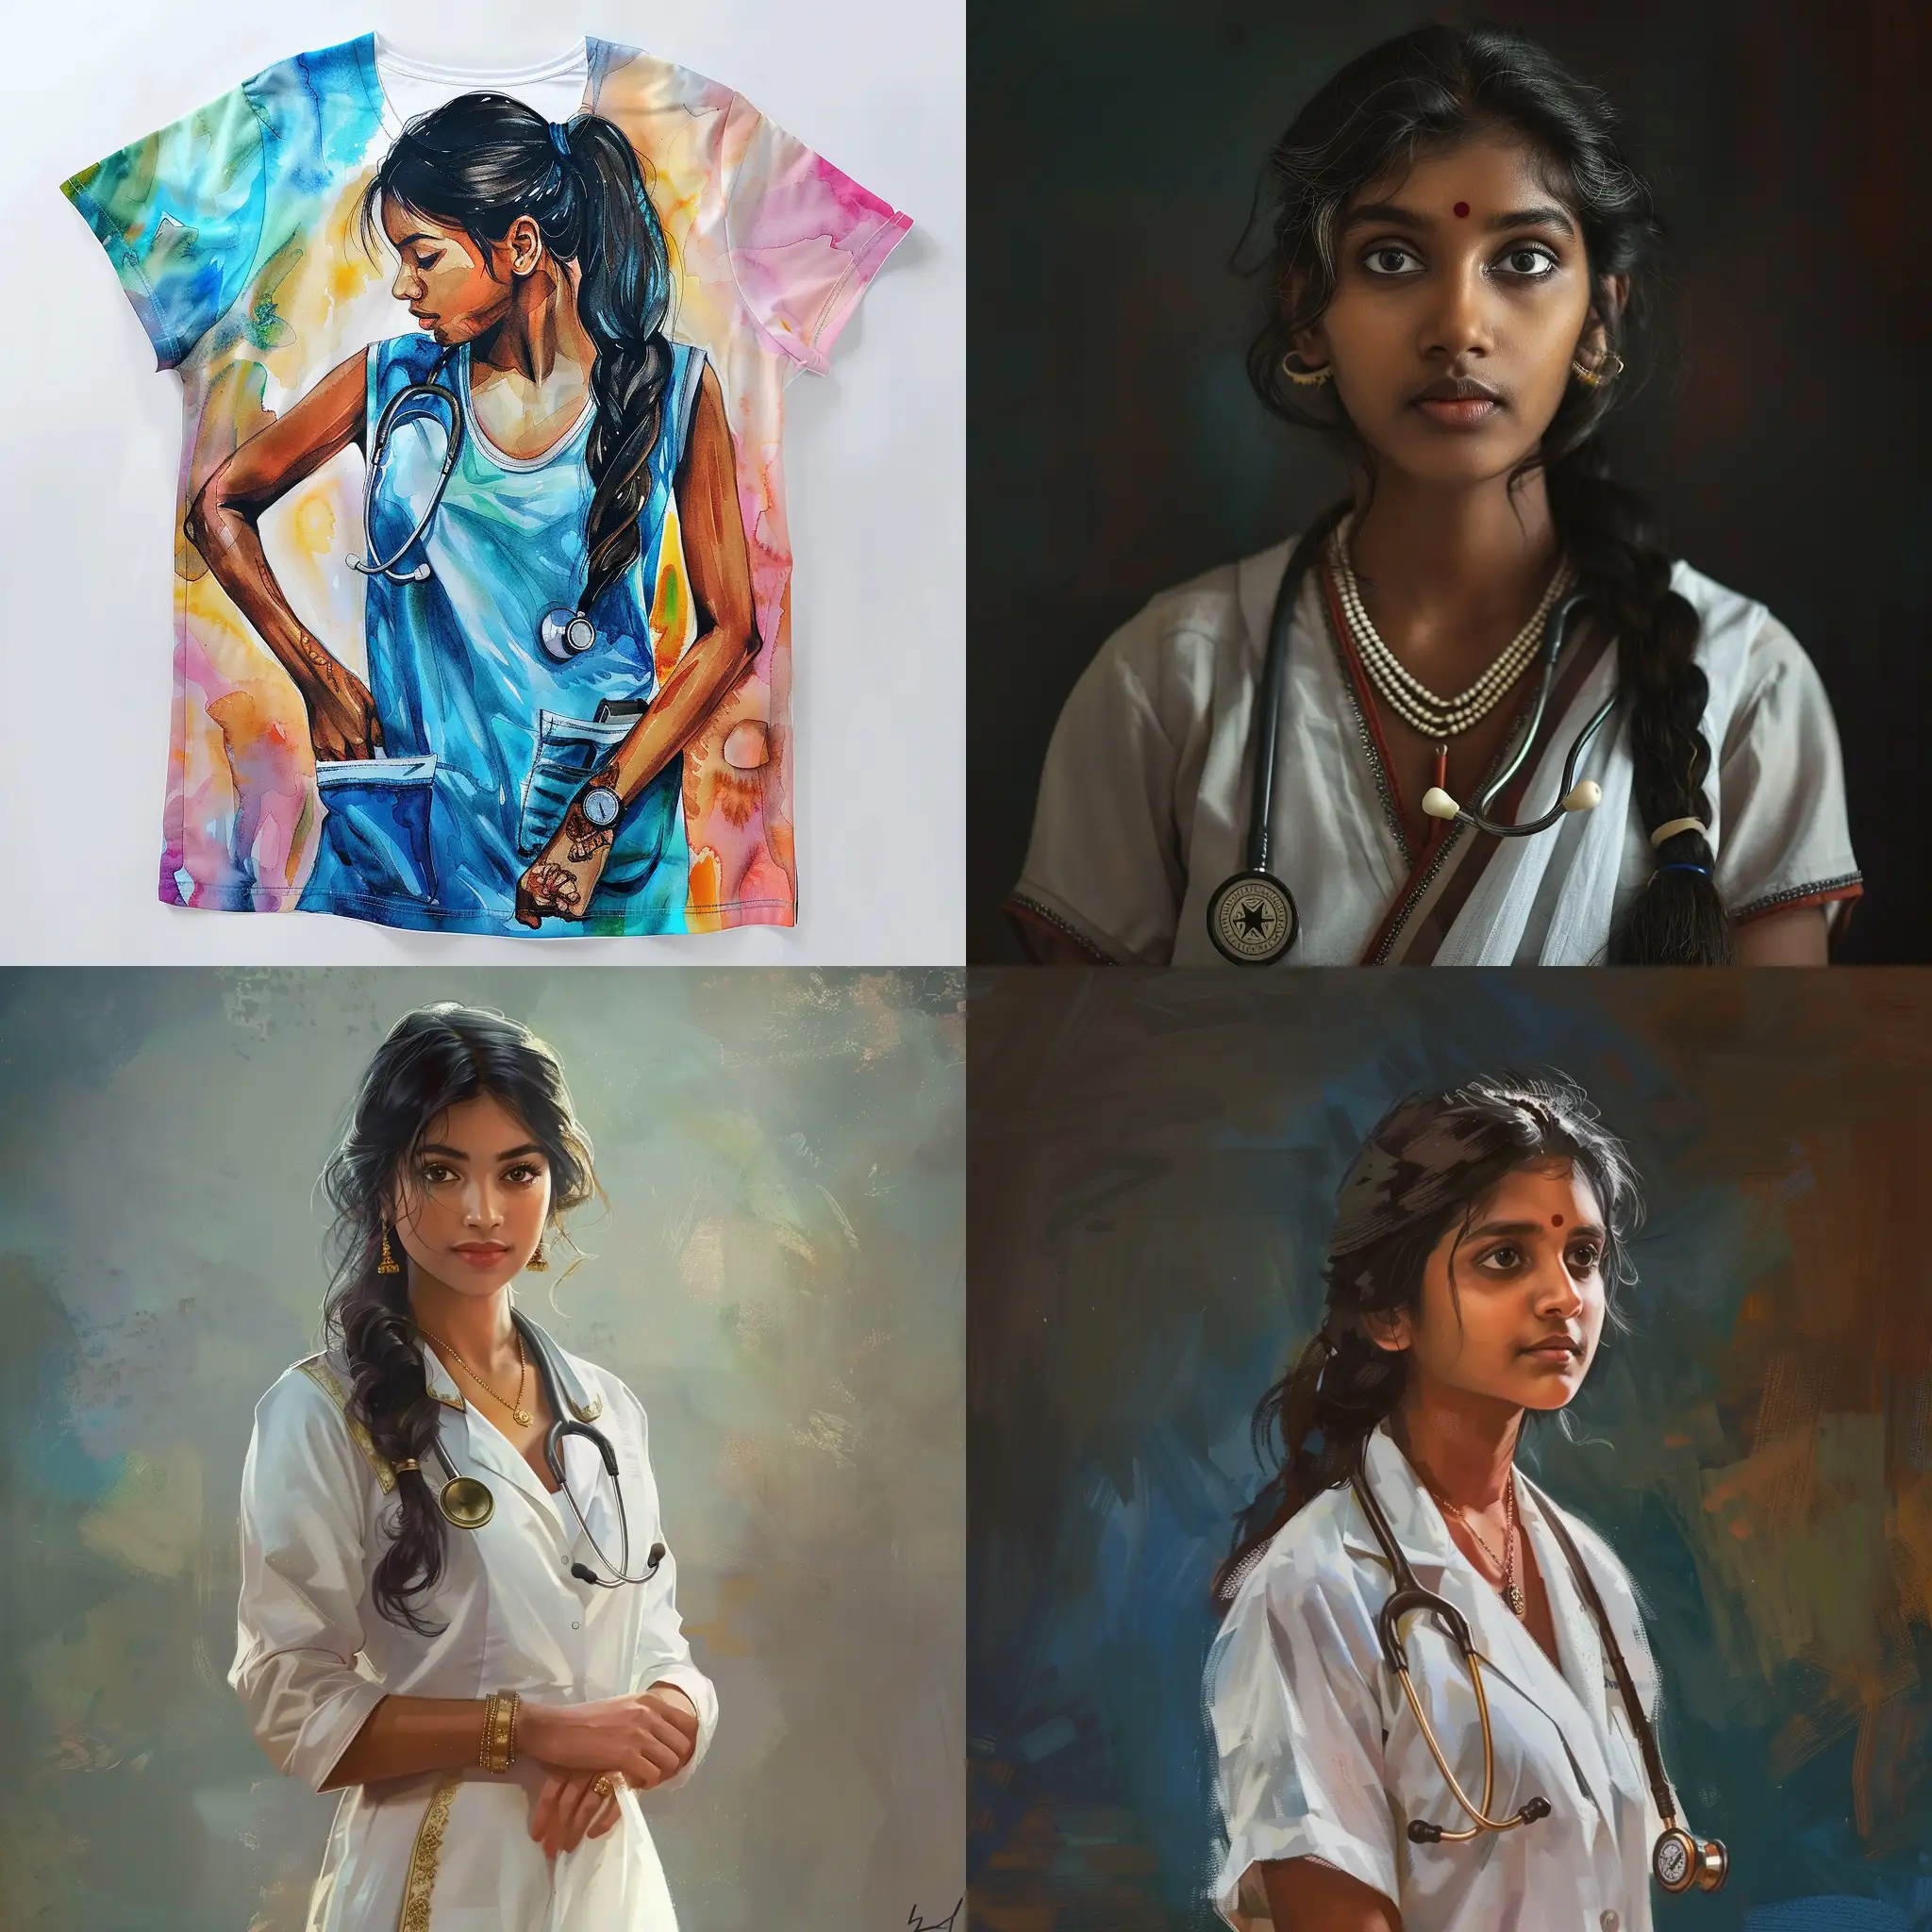 Tamil girl doctor sleeveless